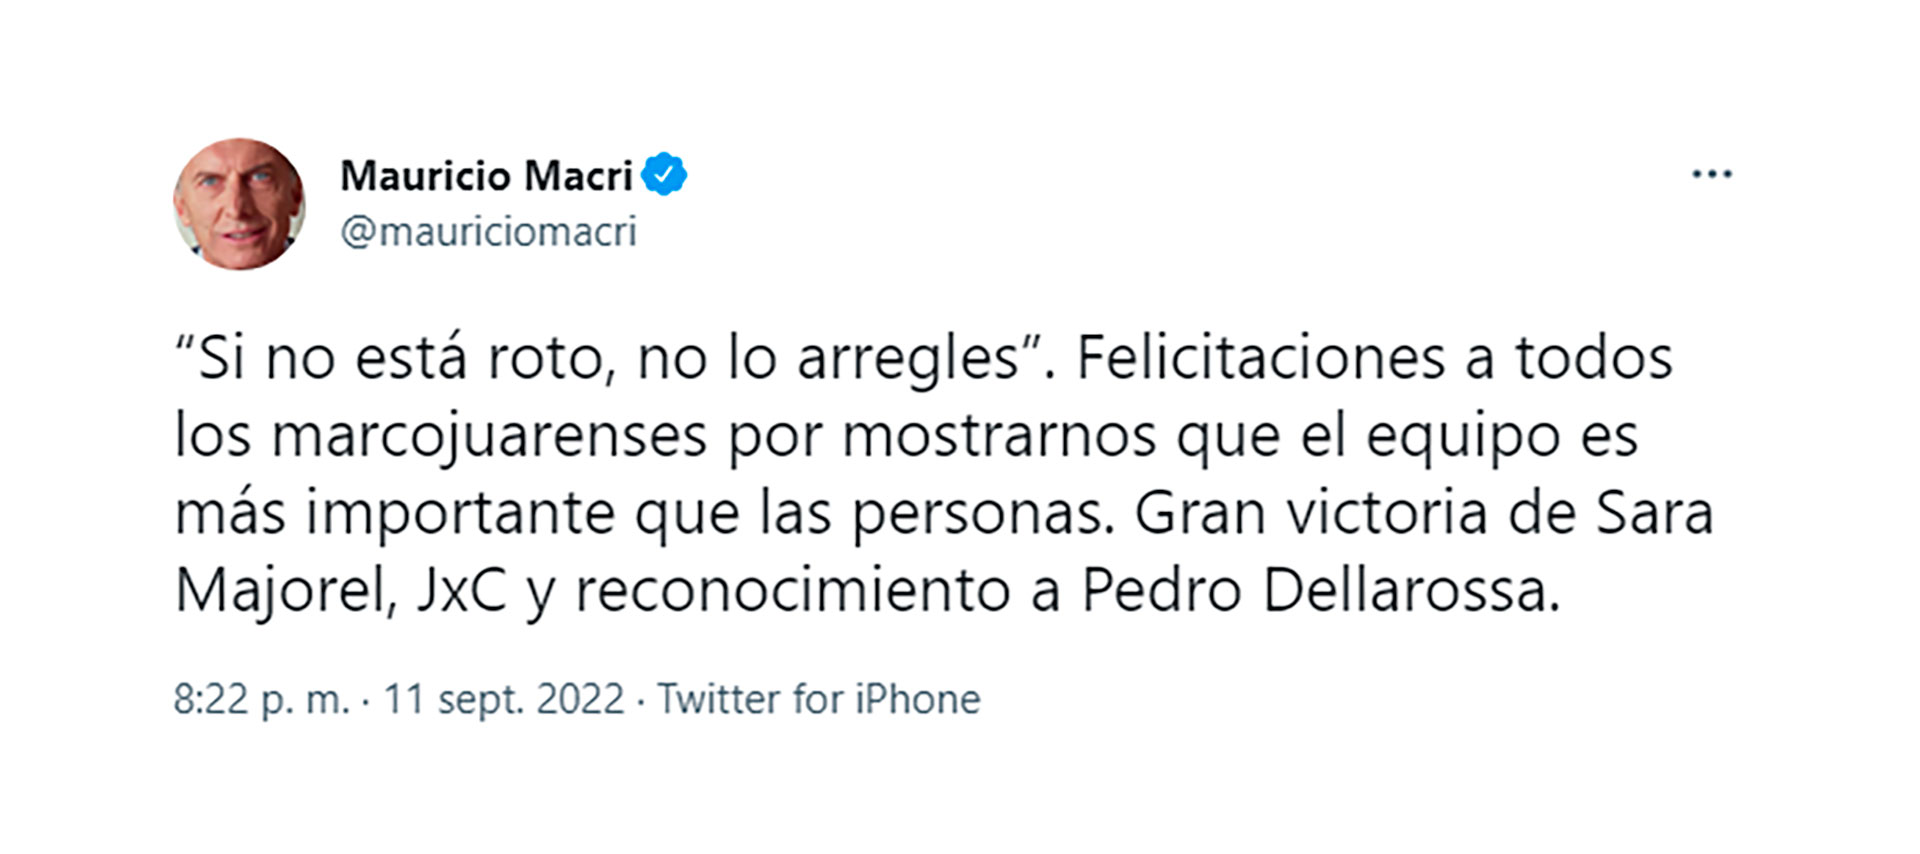 El mensaje del ex presidente Macri 